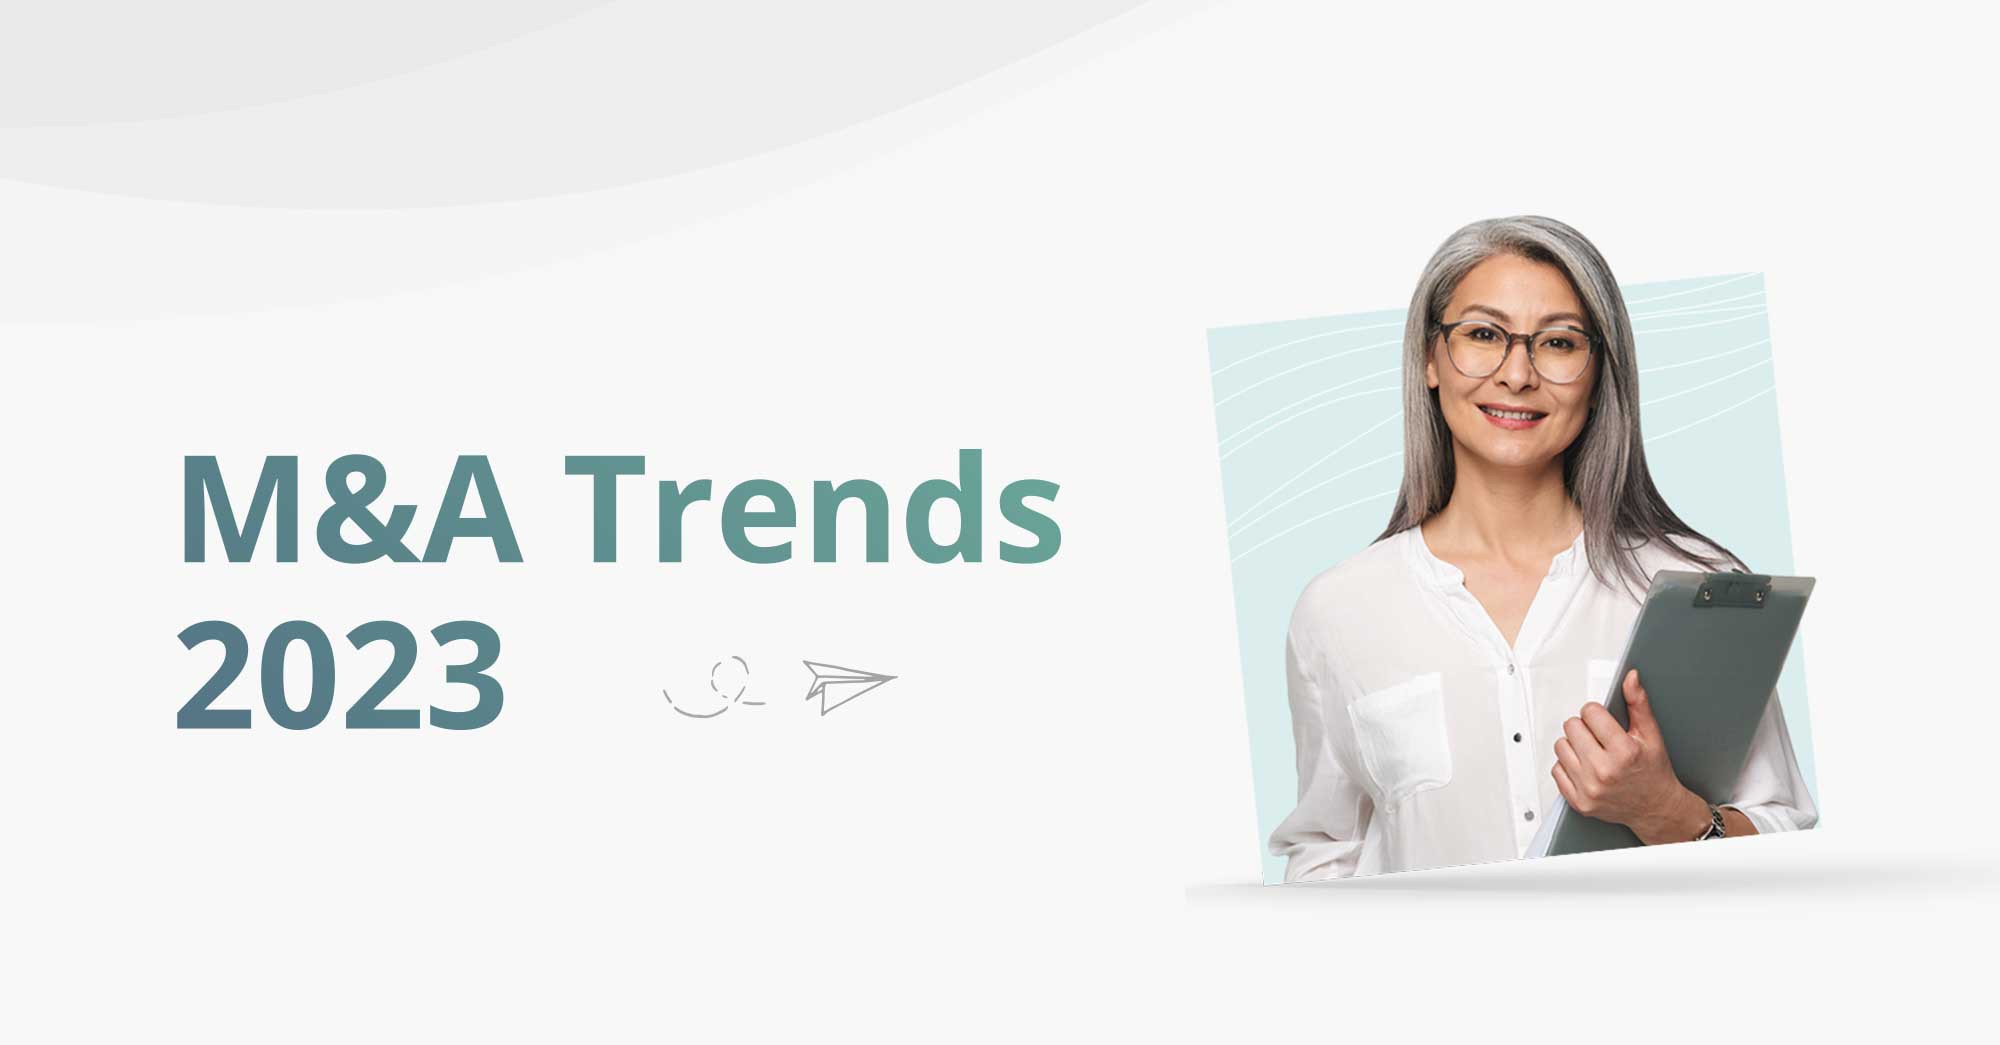 M&A Trends: 2023 So Far